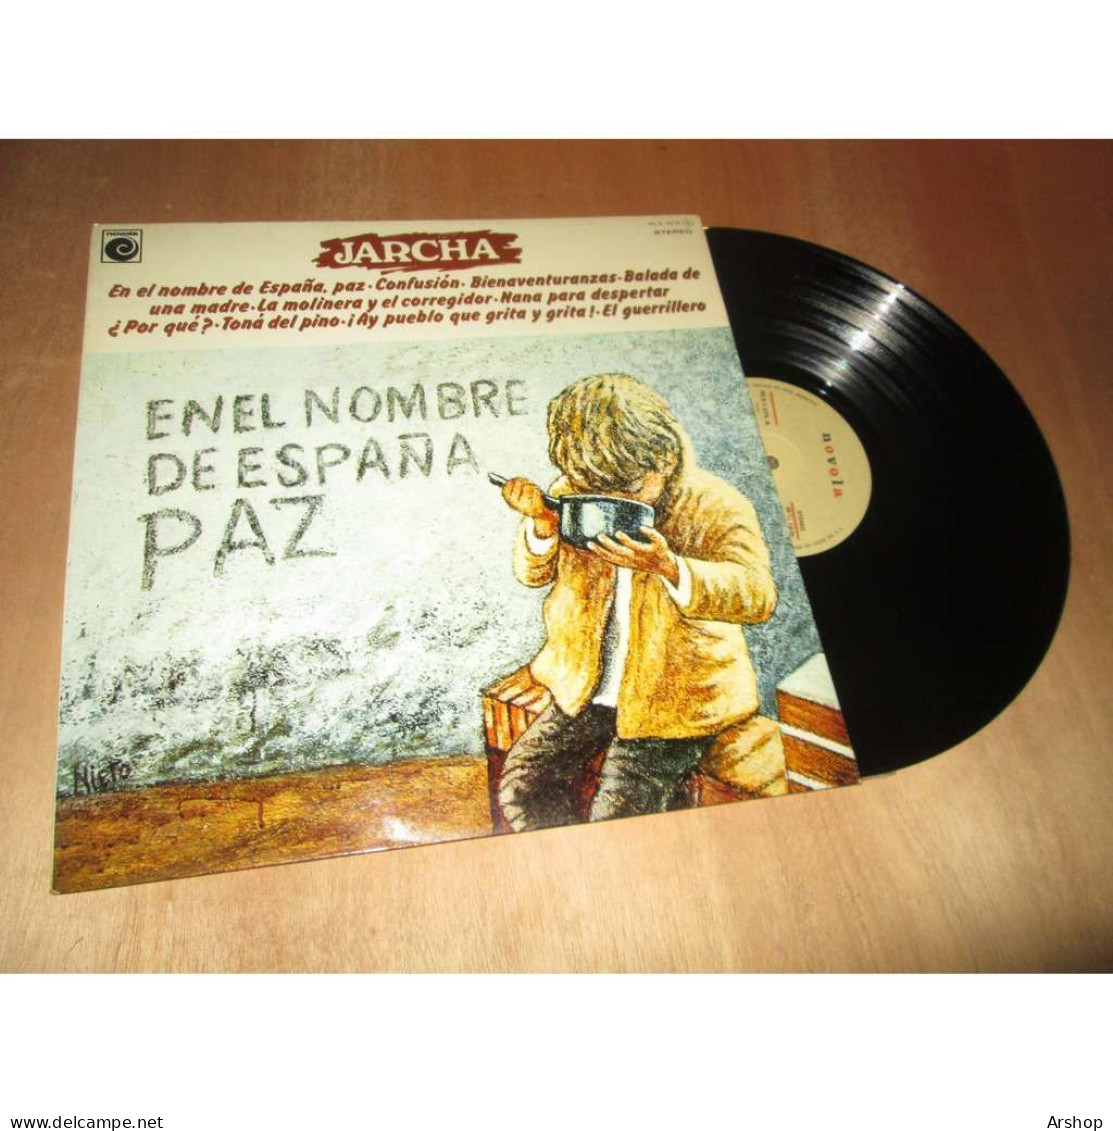 JARCHA En El Nombre De Espana Paz FOLK ESPAGNE - NOVOLA NLX 1074 Lp 1977 - Autres - Musique Espagnole